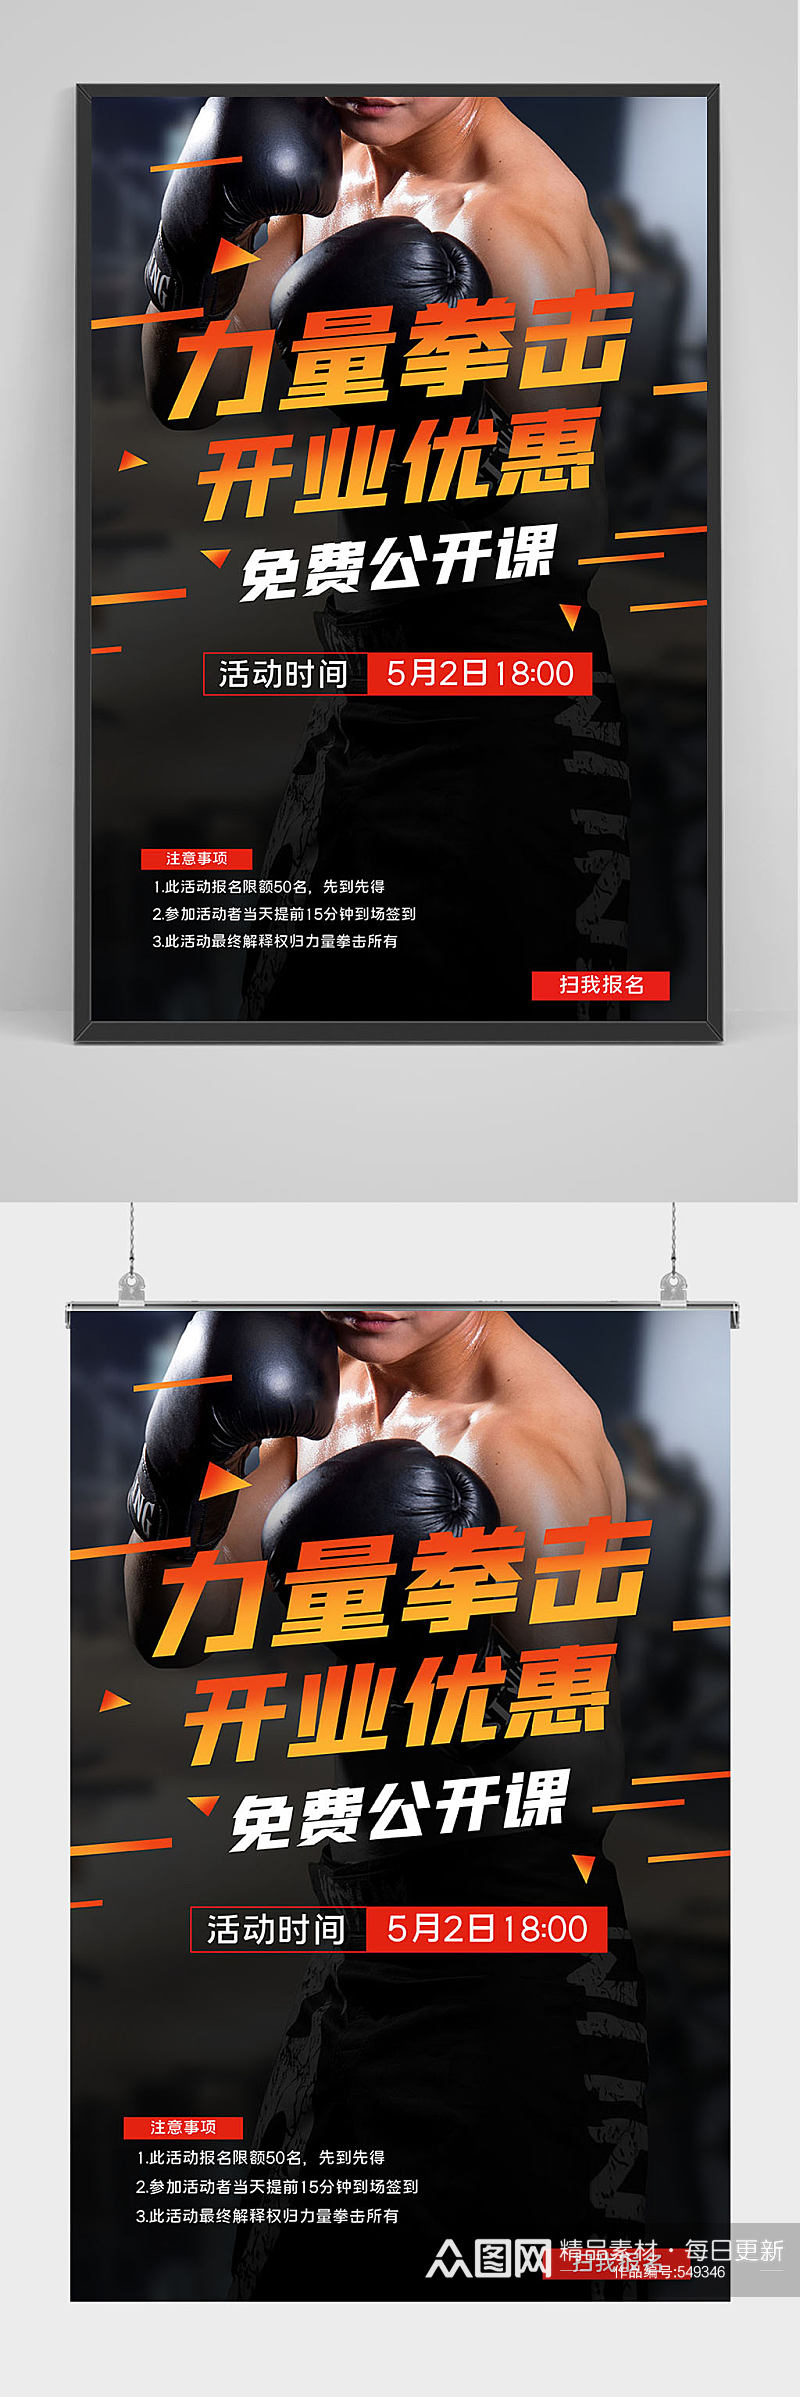 开业优惠拳击培训海报设计素材